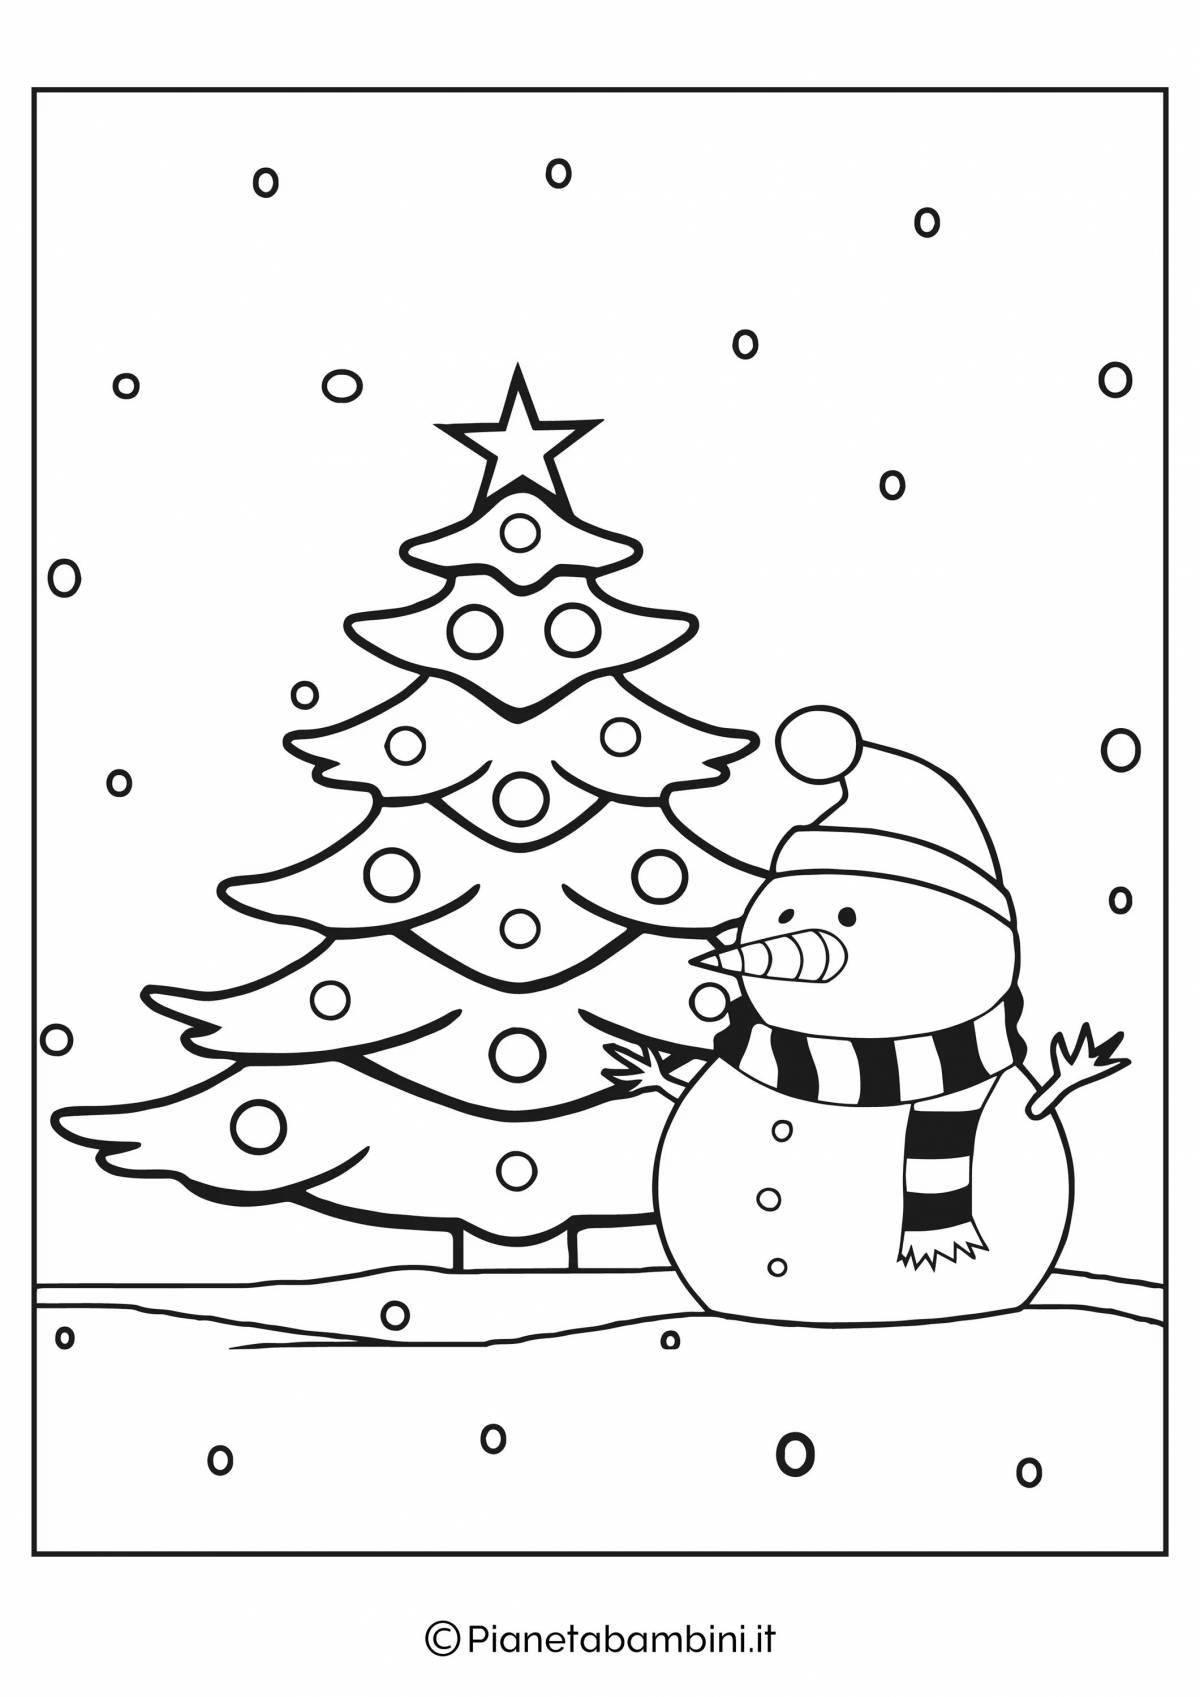 Блаженный рисунок рождественской елки